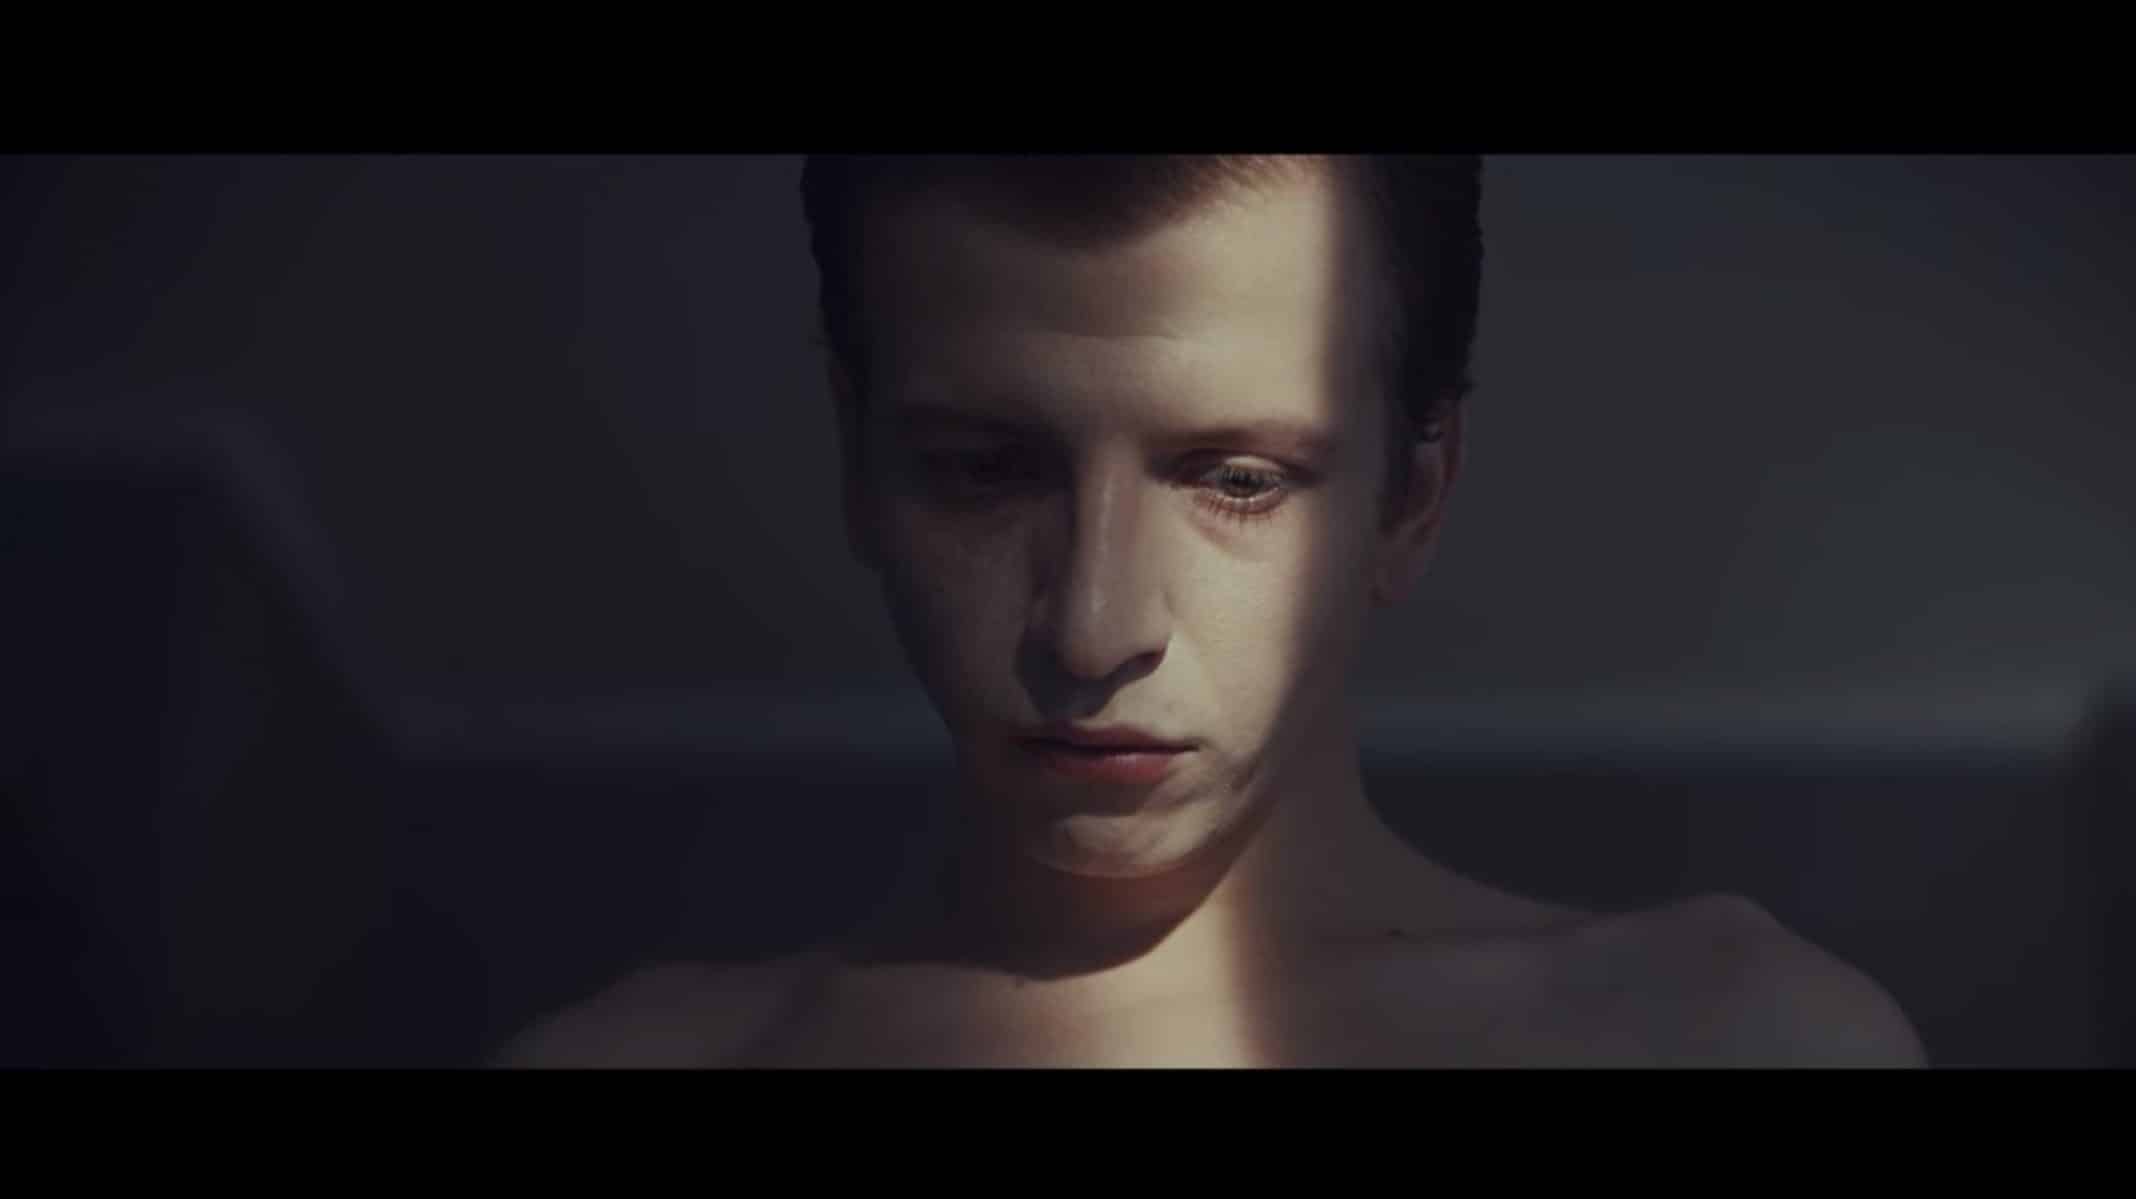 Tomek (Maciej Musialowski) with his shirt off and light over his eye.